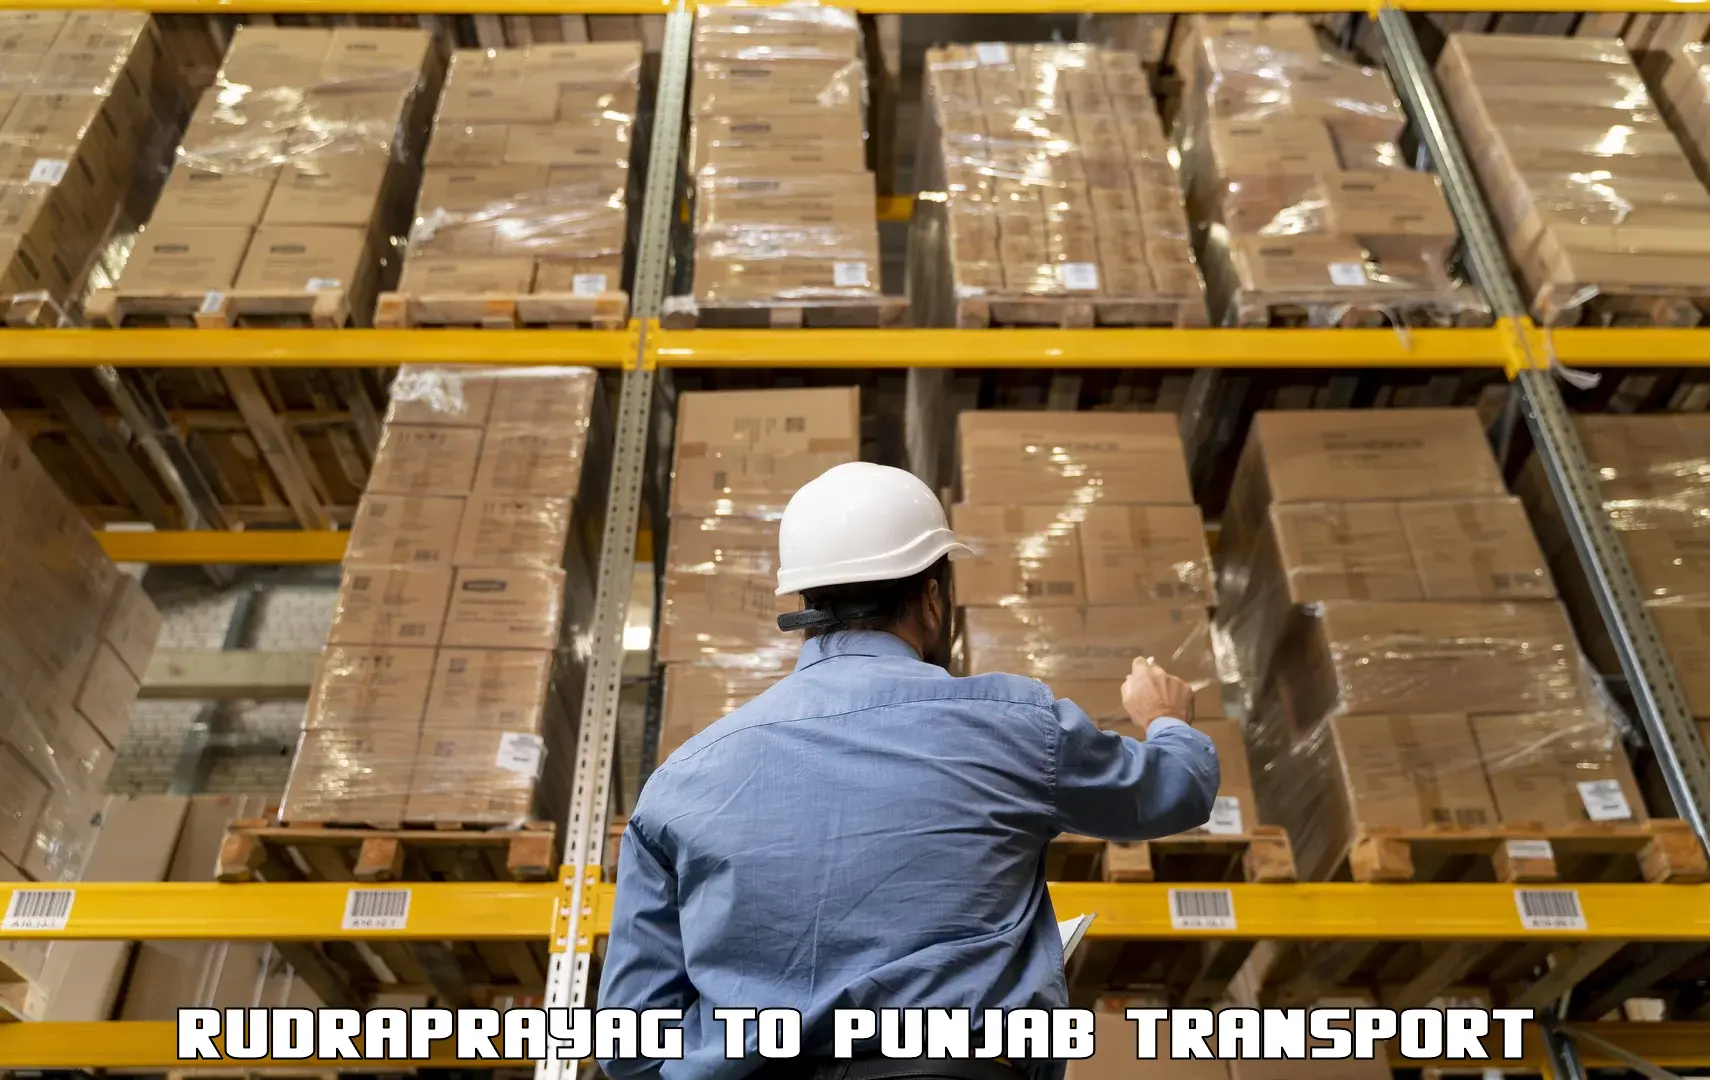 Shipping partner Rudraprayag to Begowal